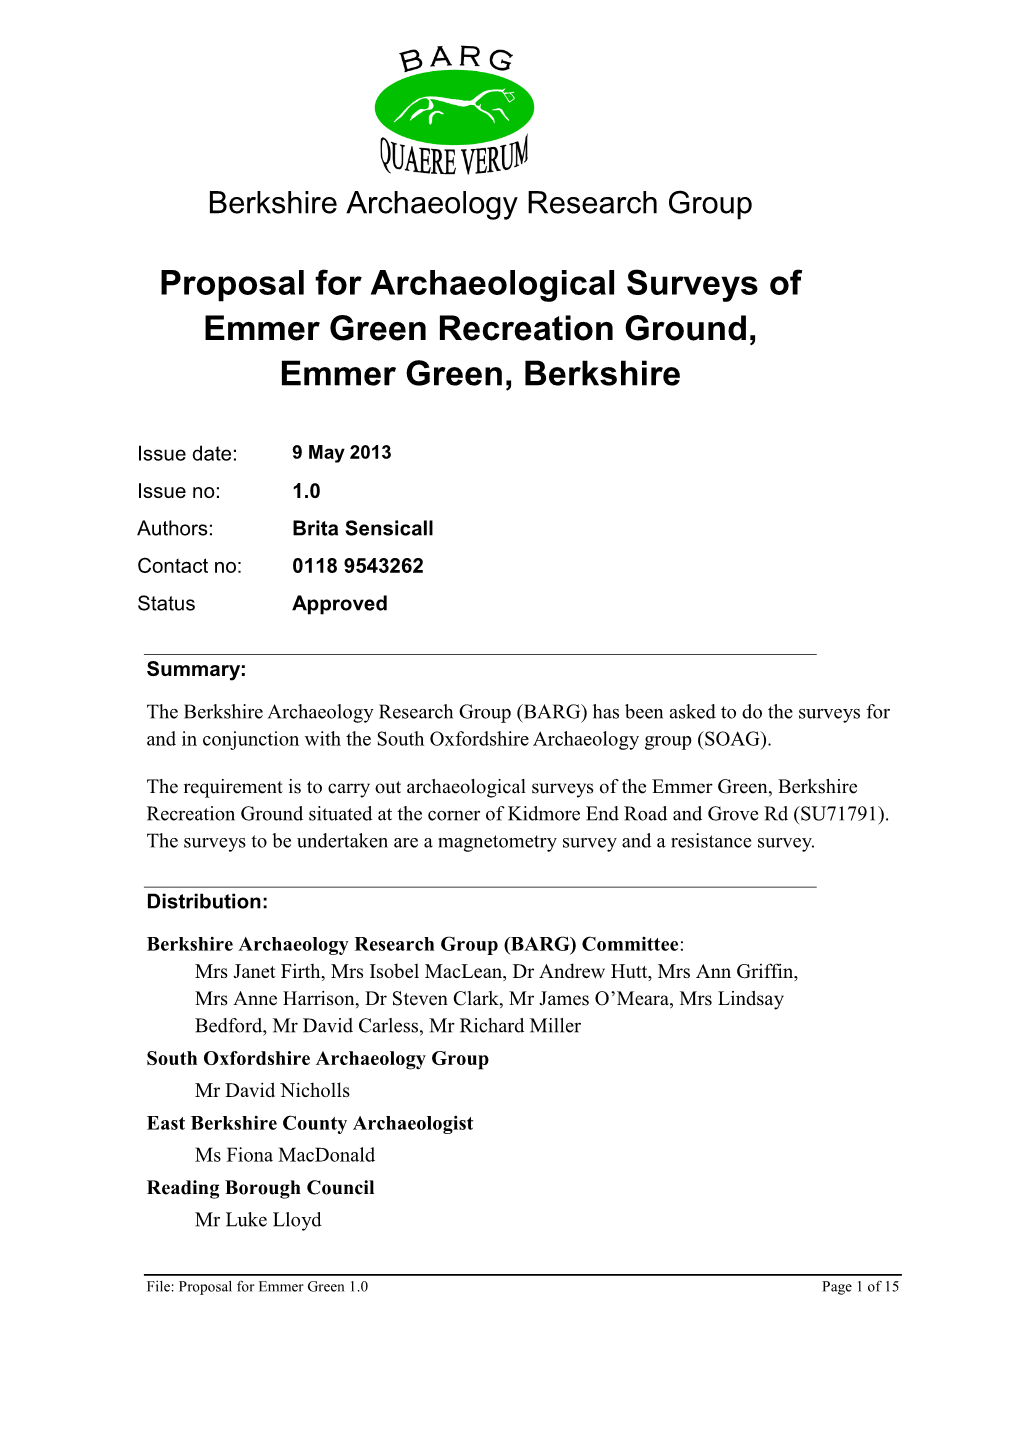 Proposal for Archaeological Surveys of Emmer Green Recreation Ground, Emmer Green, Berkshire